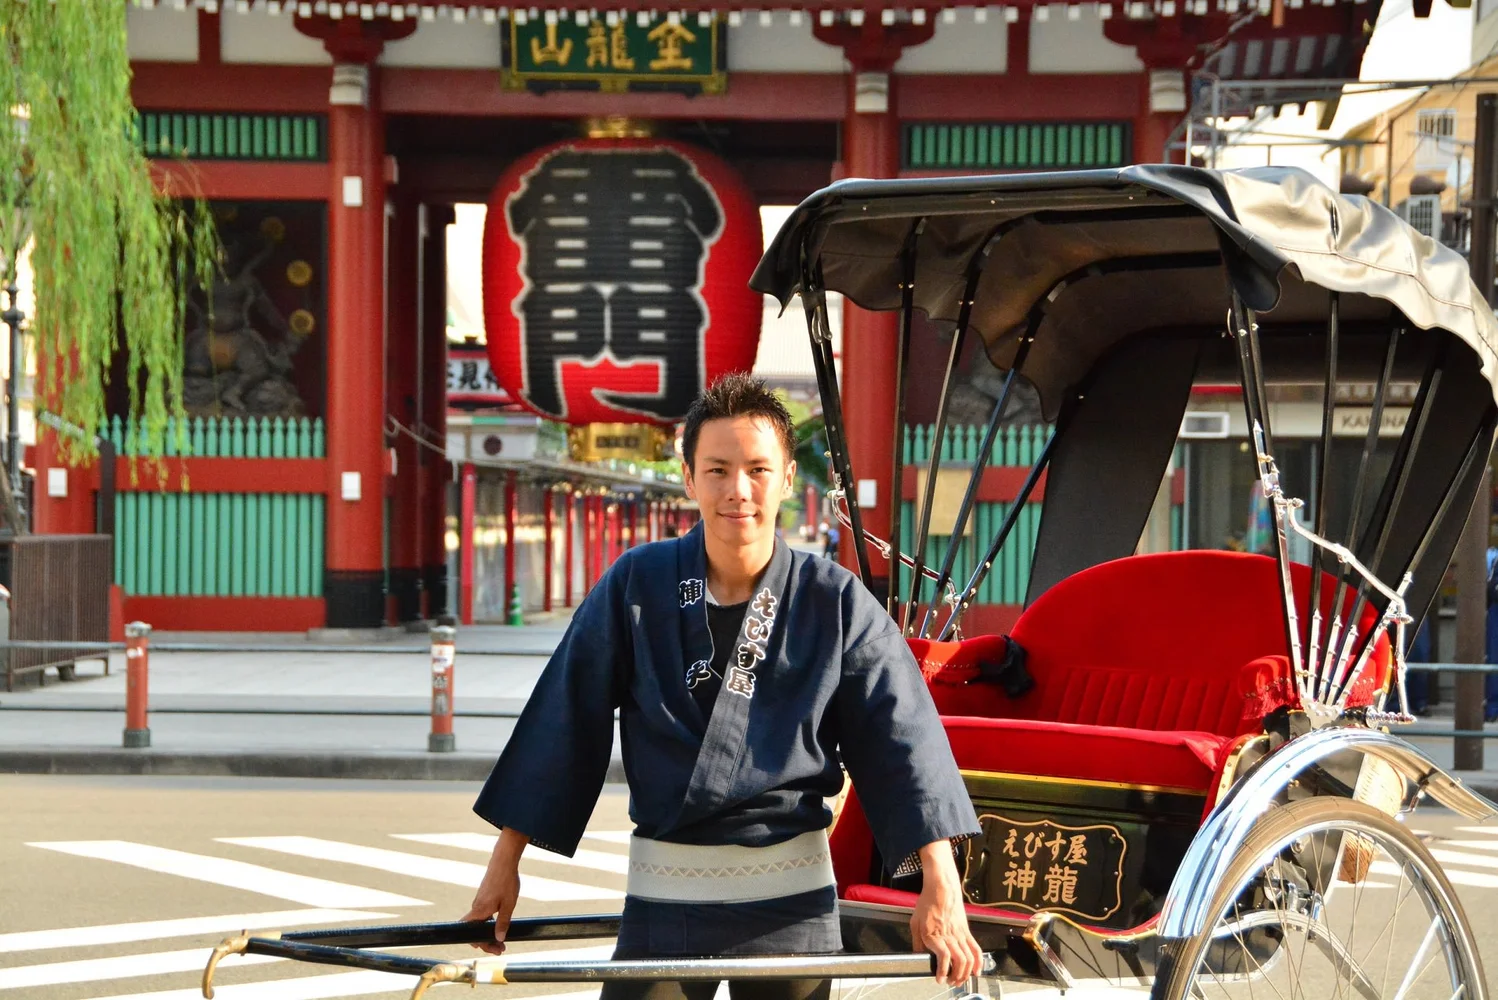 東京浅草 人力車のえびす屋 下町の歴史と風情を感じるツアー予約